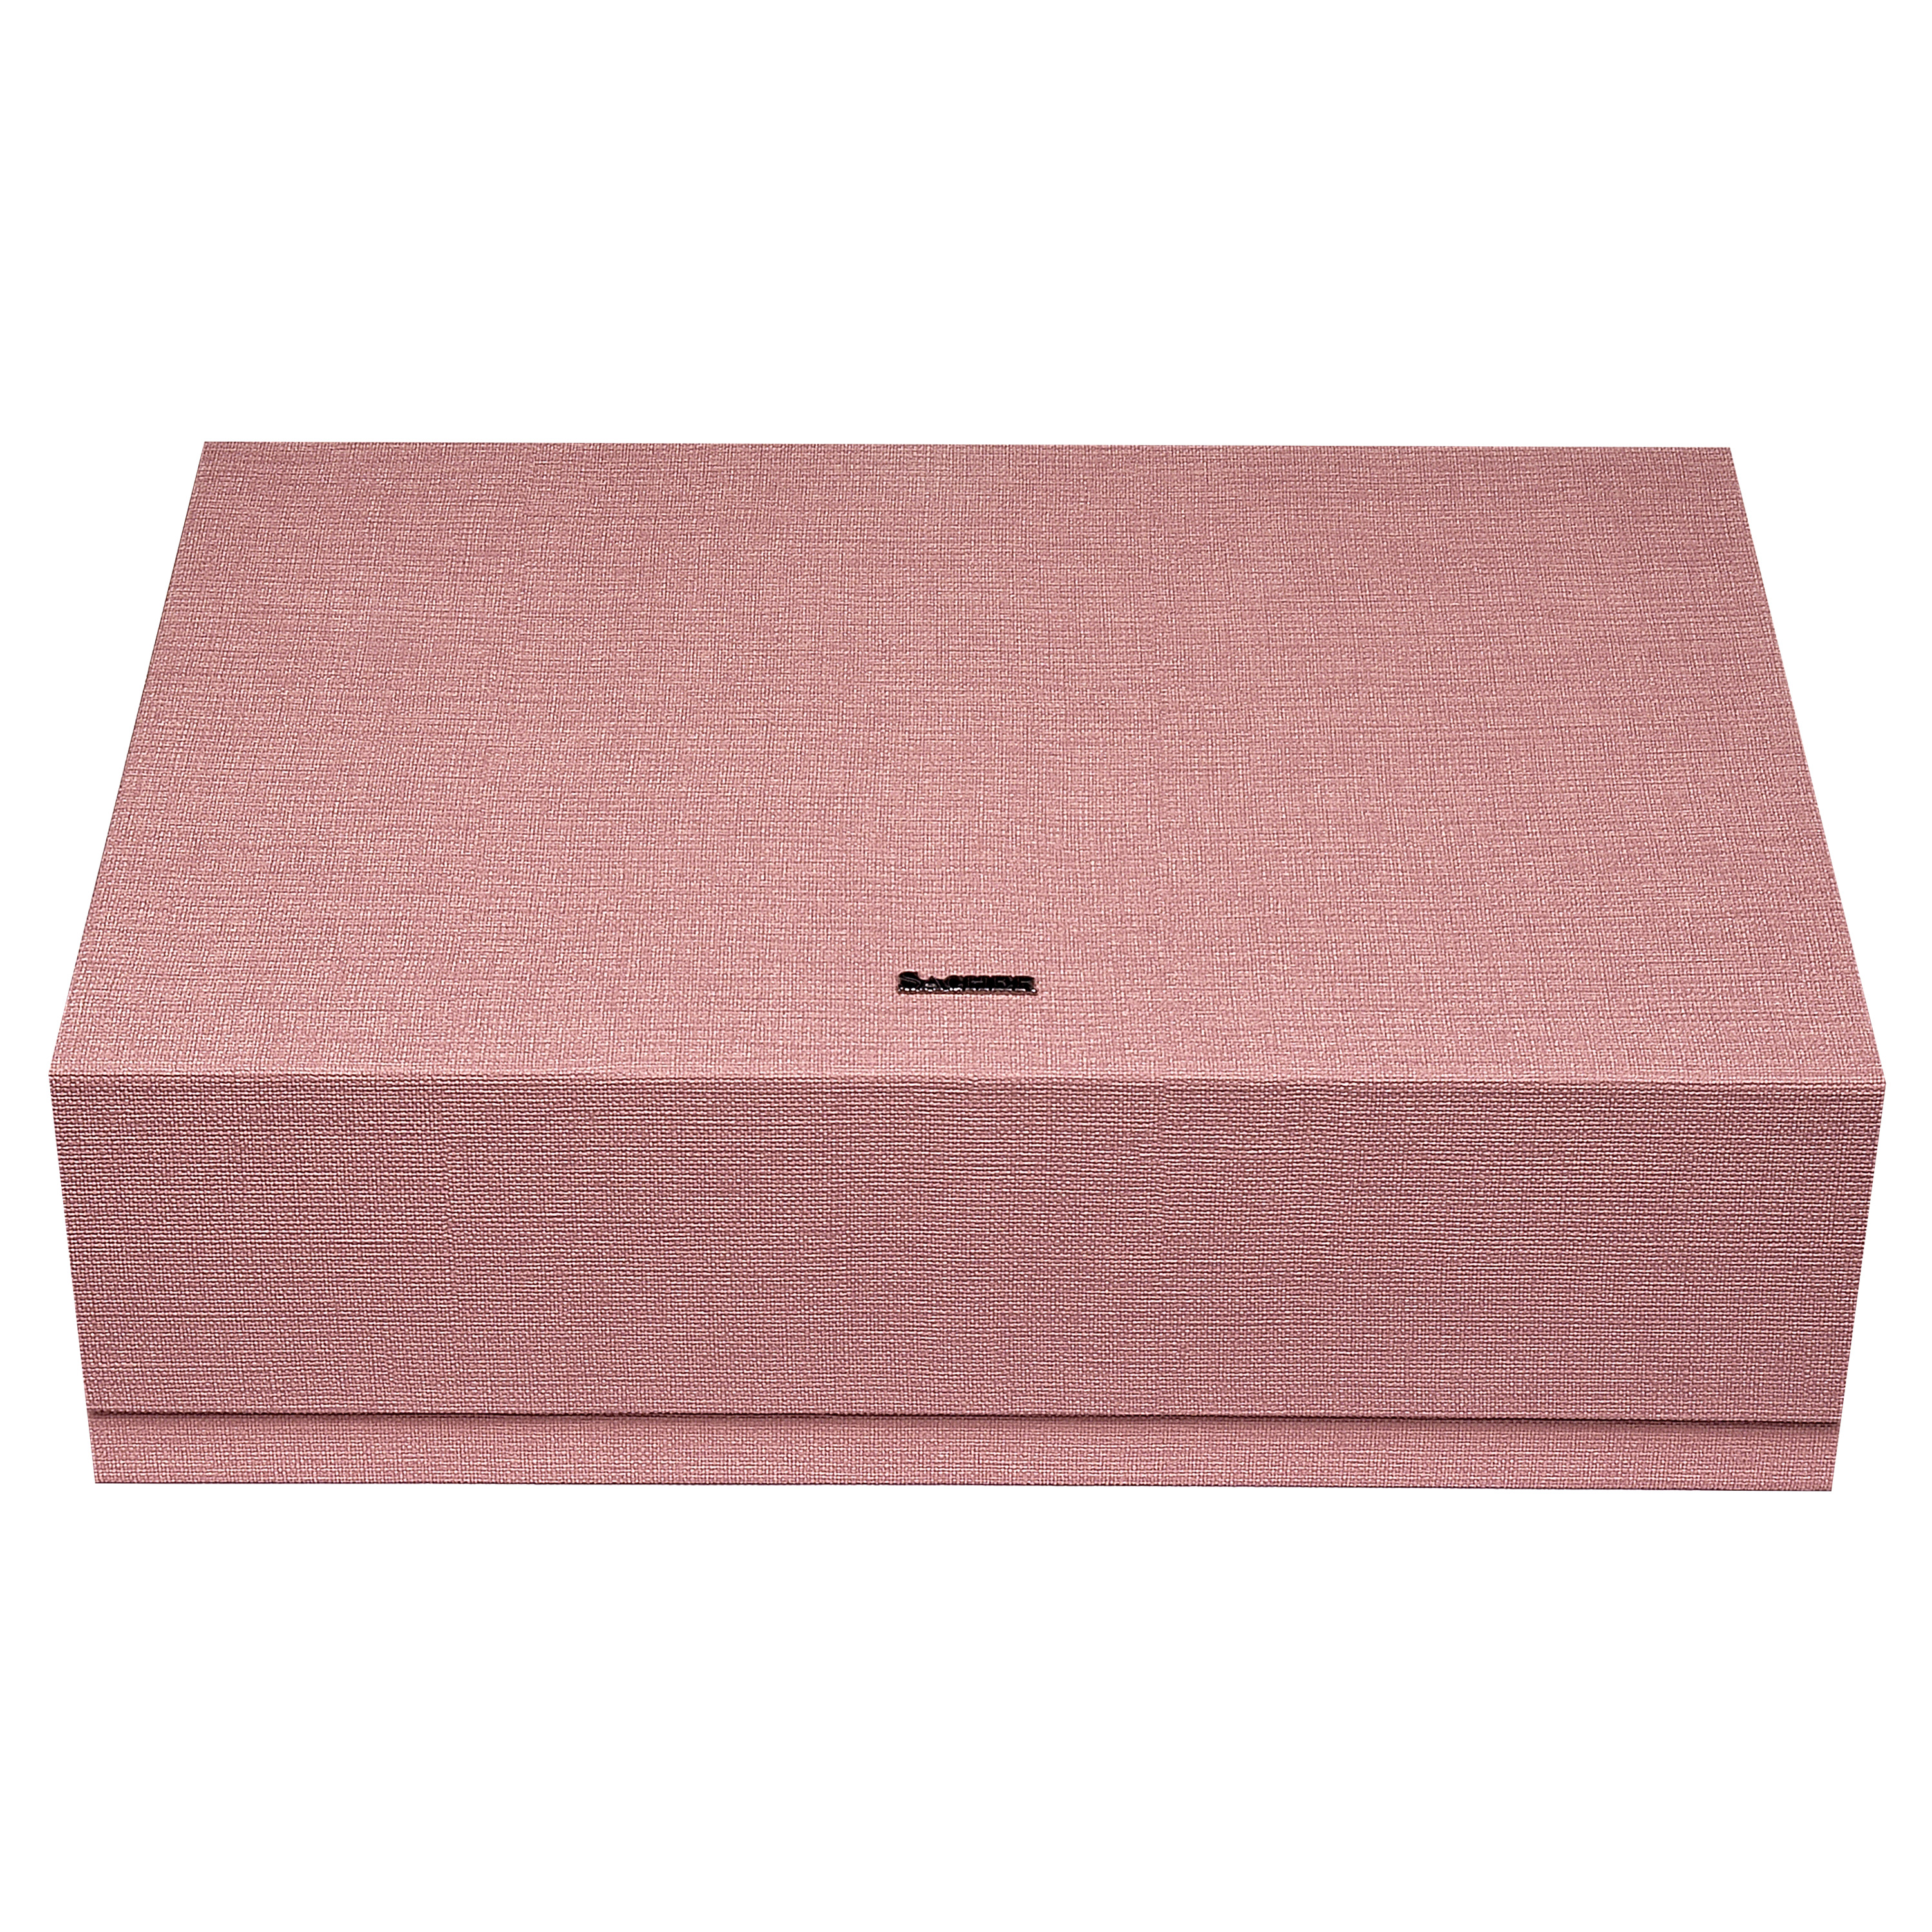 Schmuckbox pastello / rosa